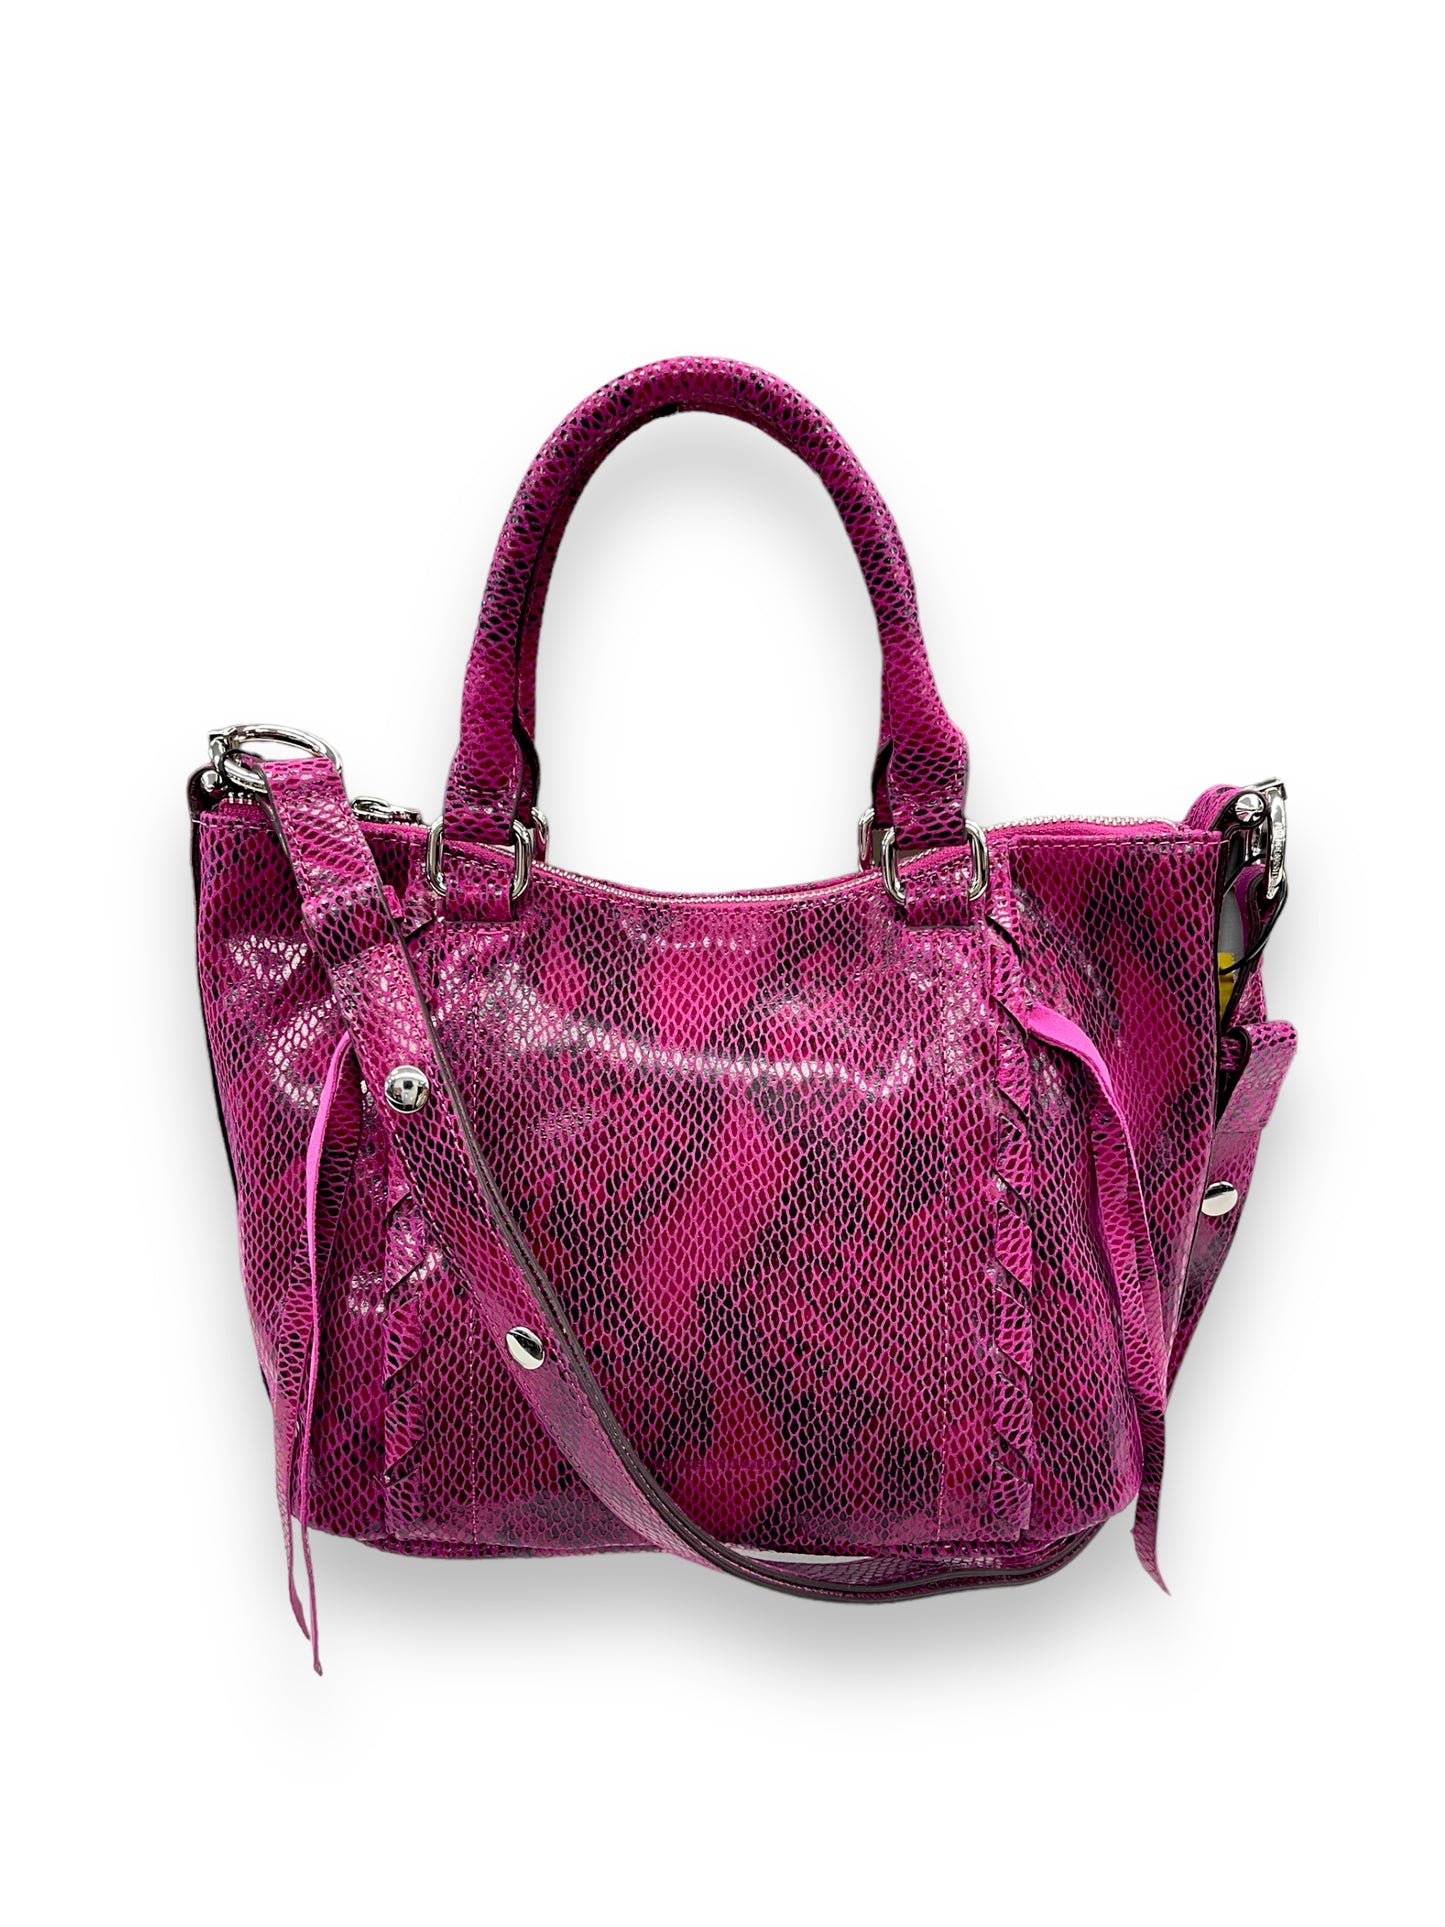 Handbag Designer By Aimee Kestenberg  Size: Medium